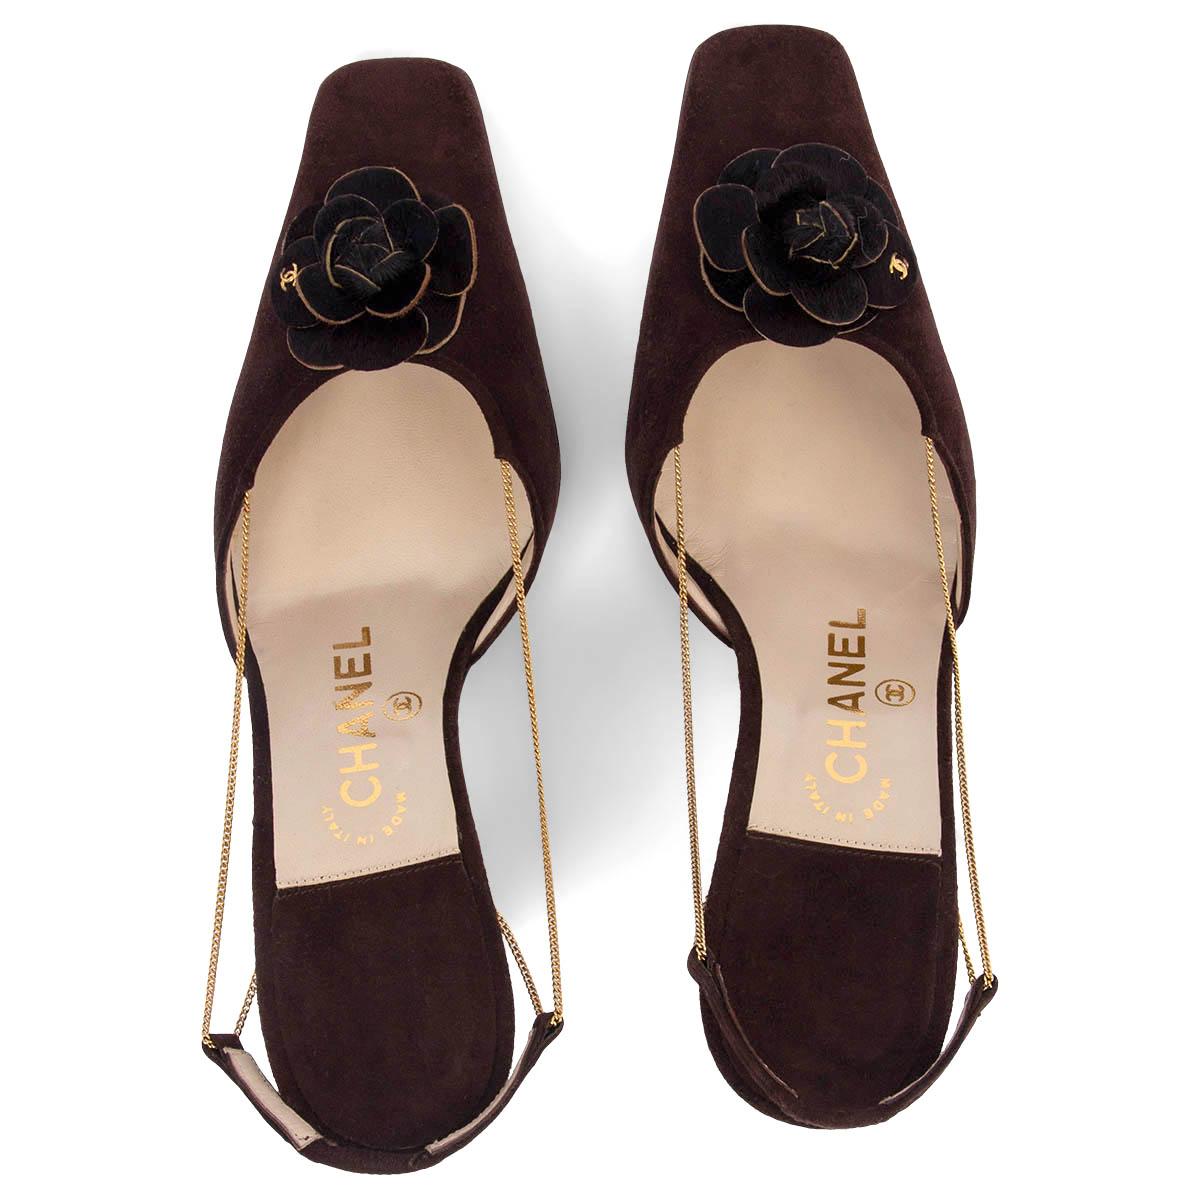  CHANEL daim marron CHAIN SLINGBACK CAMELLIA Chaussures 38.5 Pour femmes 